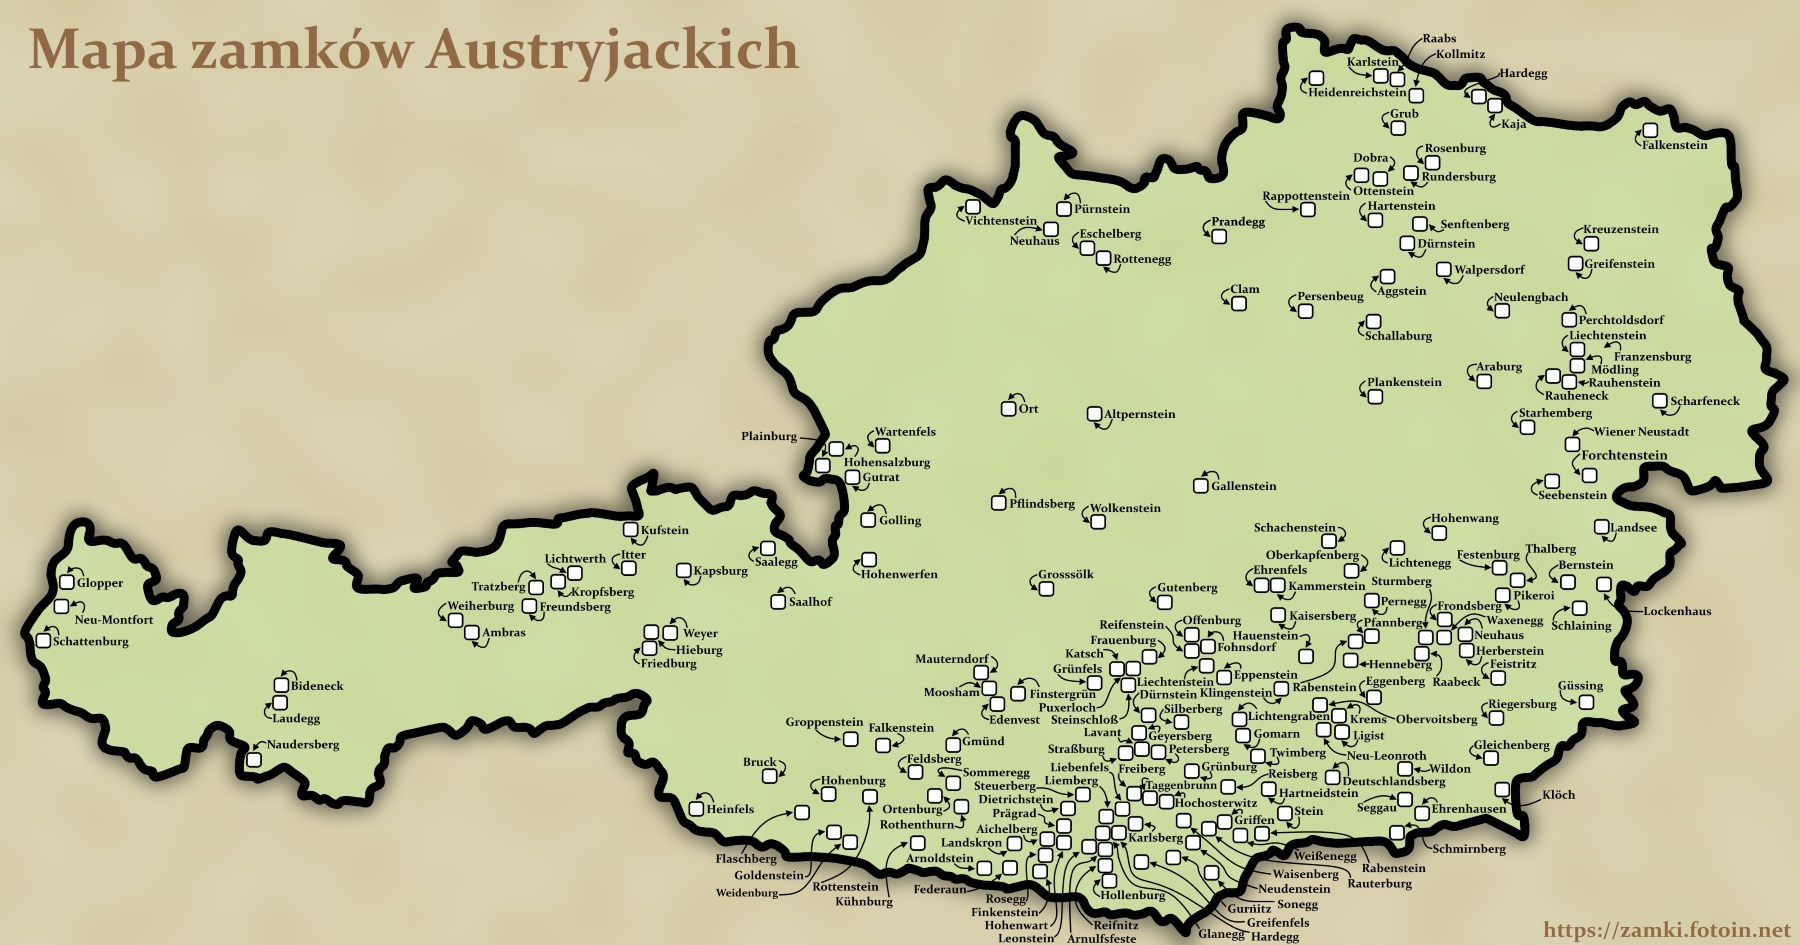 Mapa Austriackich zamków